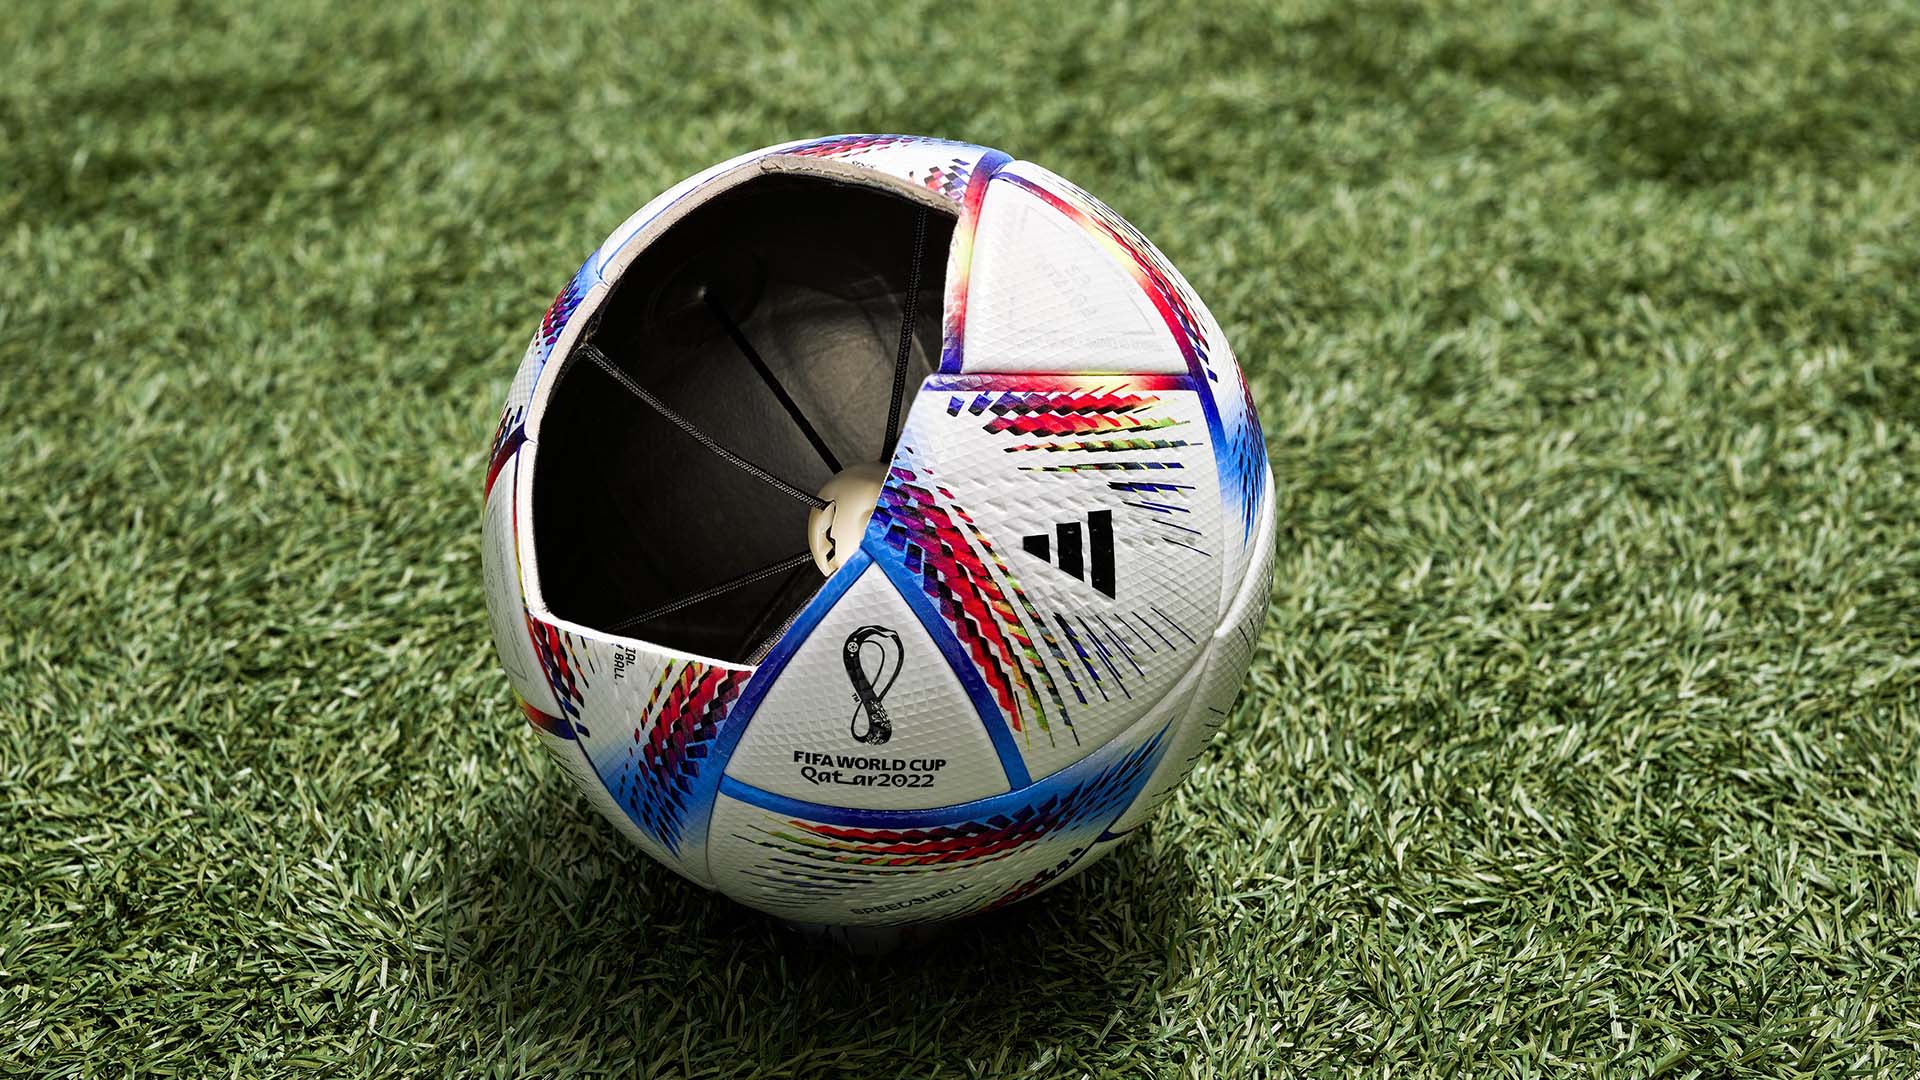 Al Rihla innovative match ball for FIFA World Cup in Qatar